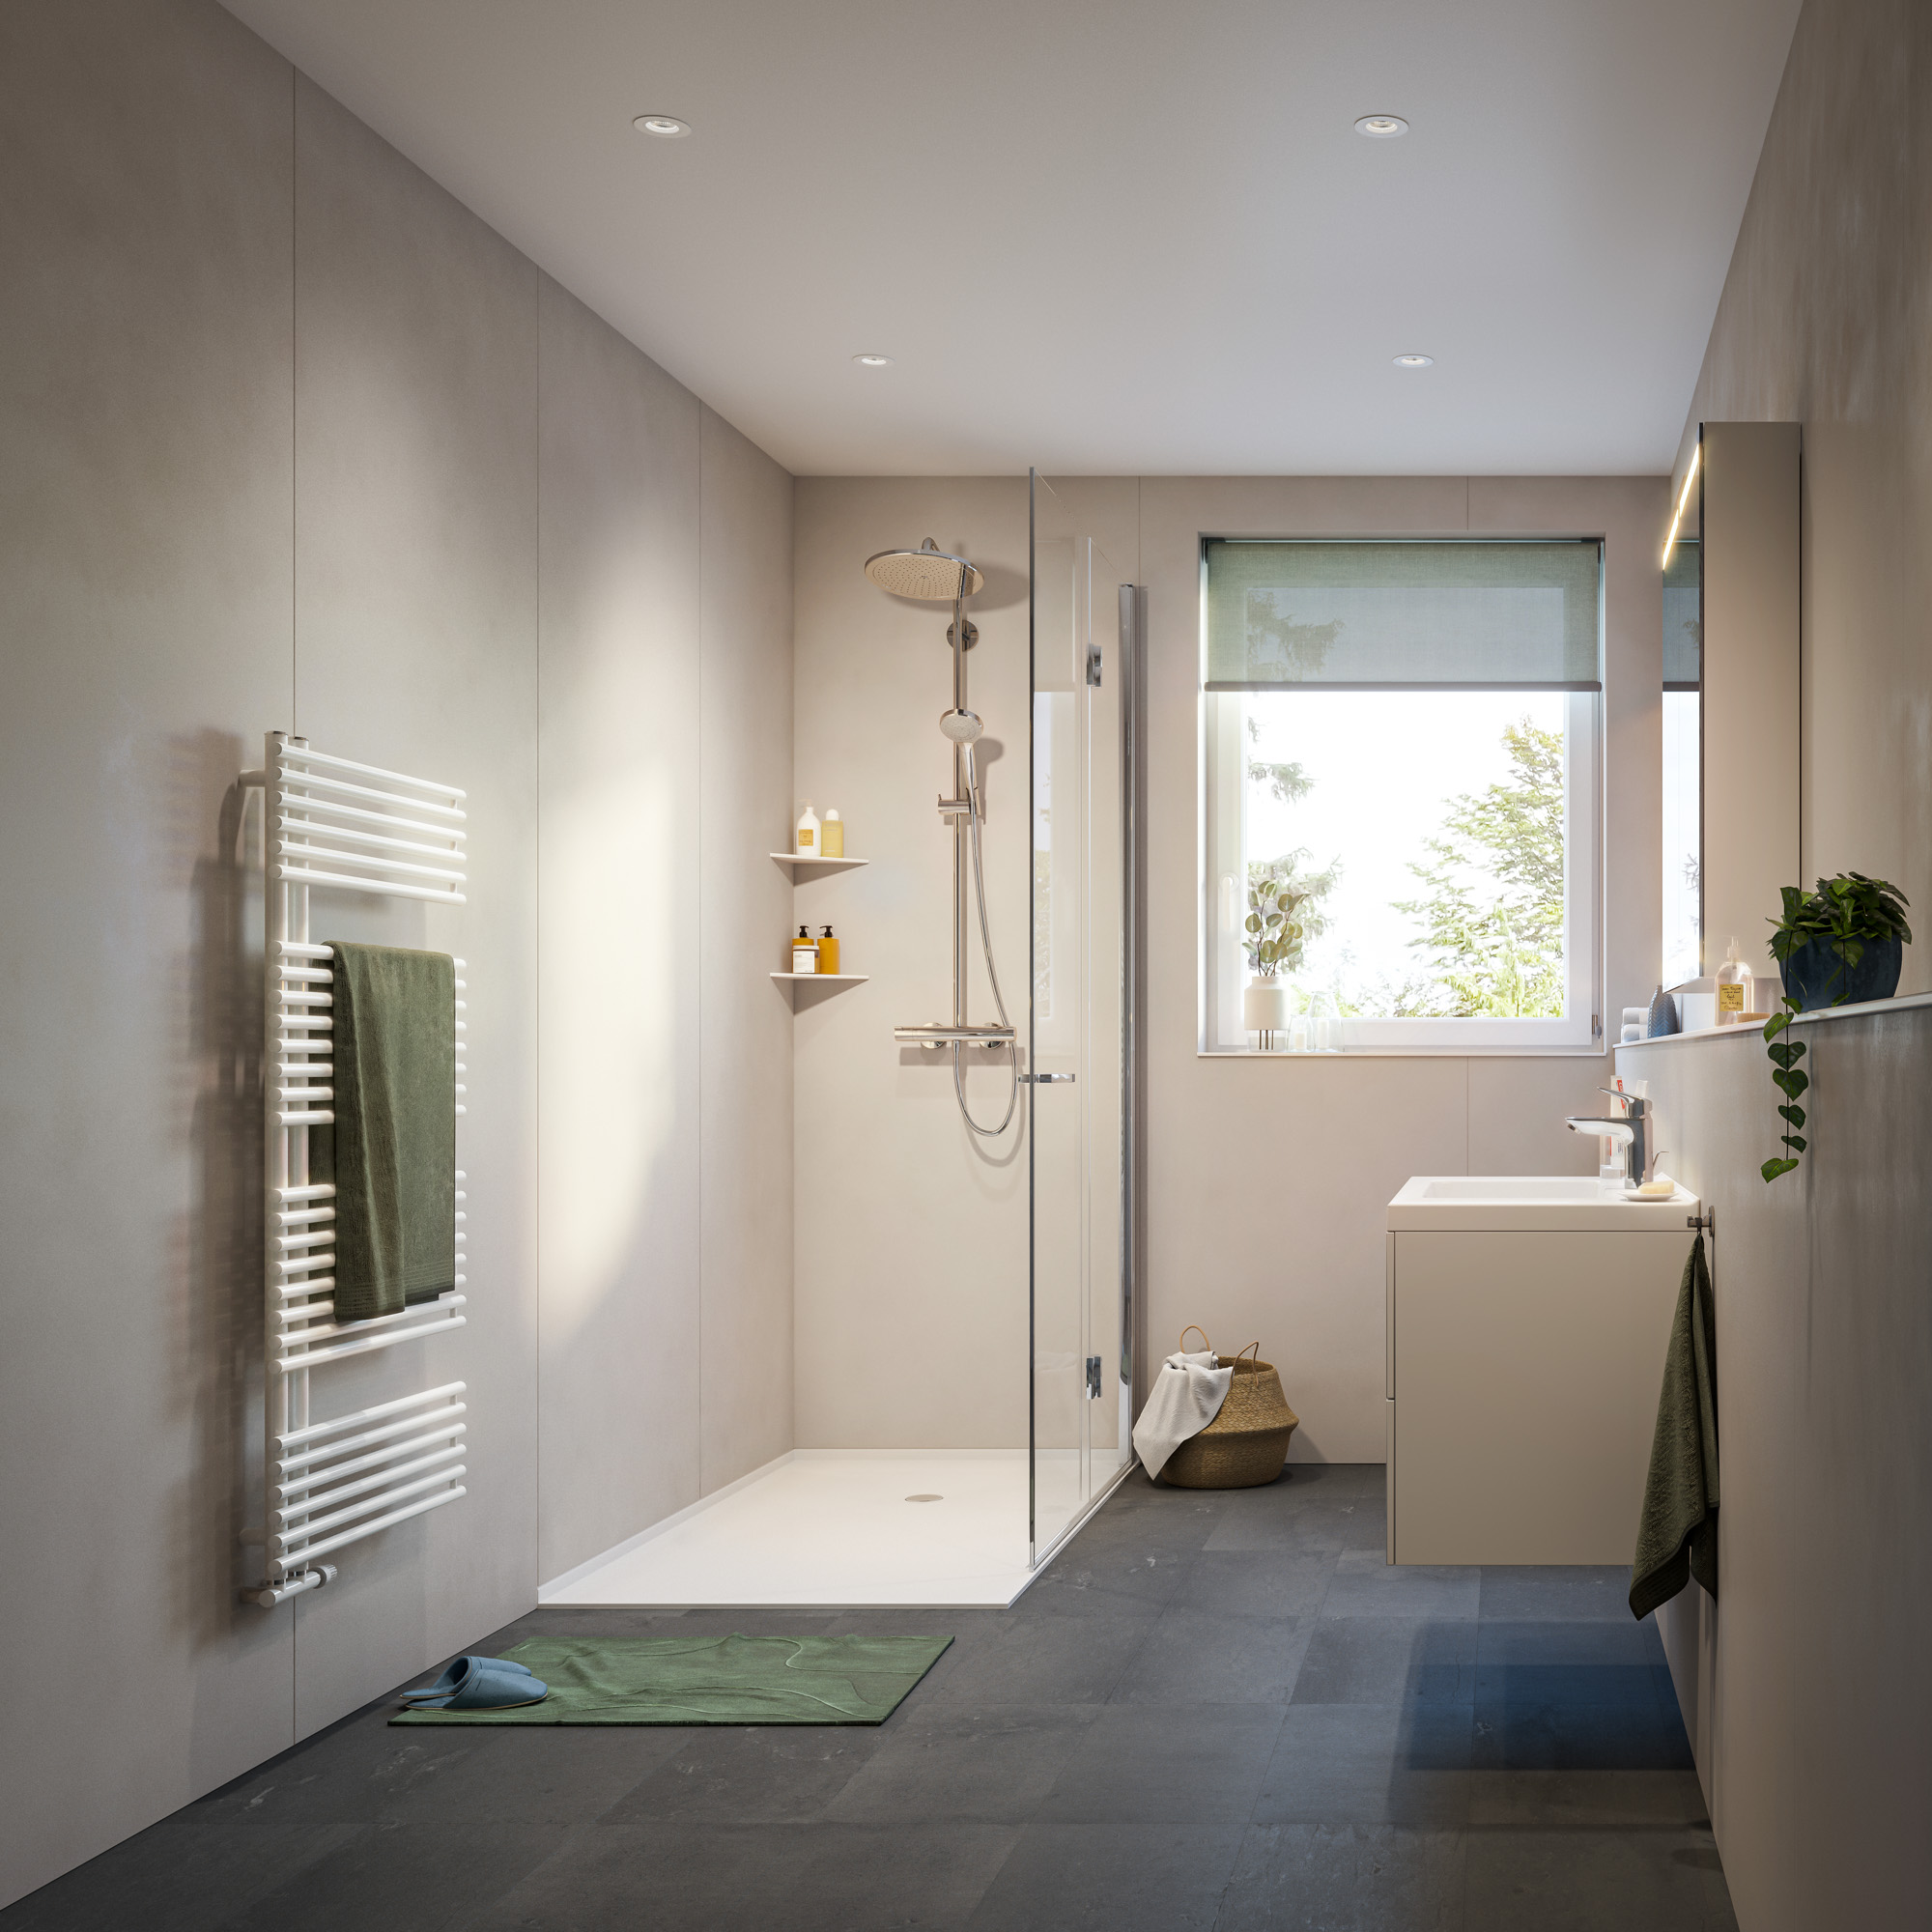 Komplett neues Bad mit modernen Amaturen und modischer Dusche